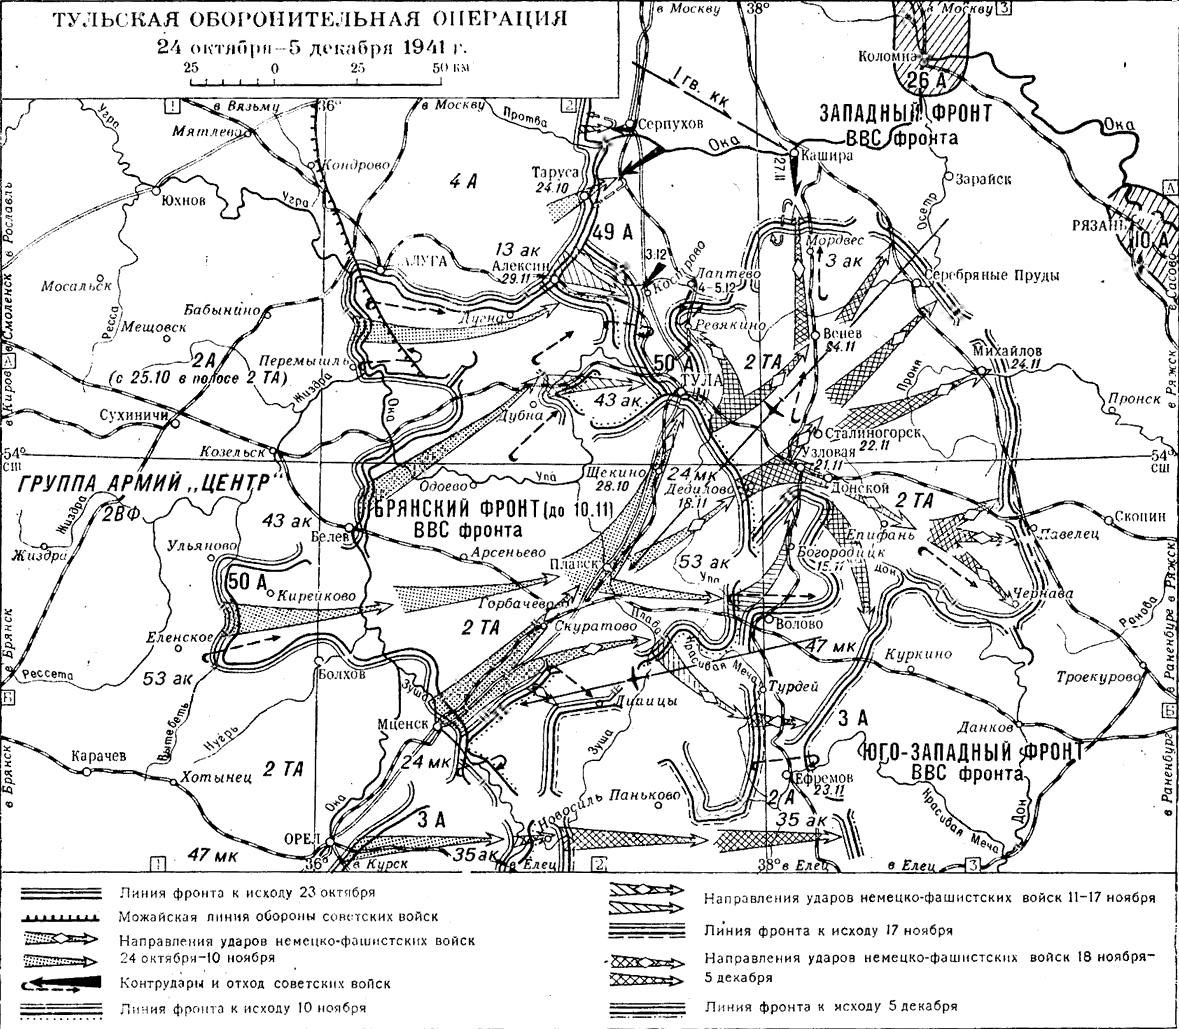 5 августа 1941 год. Тульская оборонительная операция 1941 года карта боевых. Тульская оборонительная операция 1941 года карта. Тульская оборонительная операция 24 октября-5 декабря 1941. Оборона Тулы в 1941 году карта.